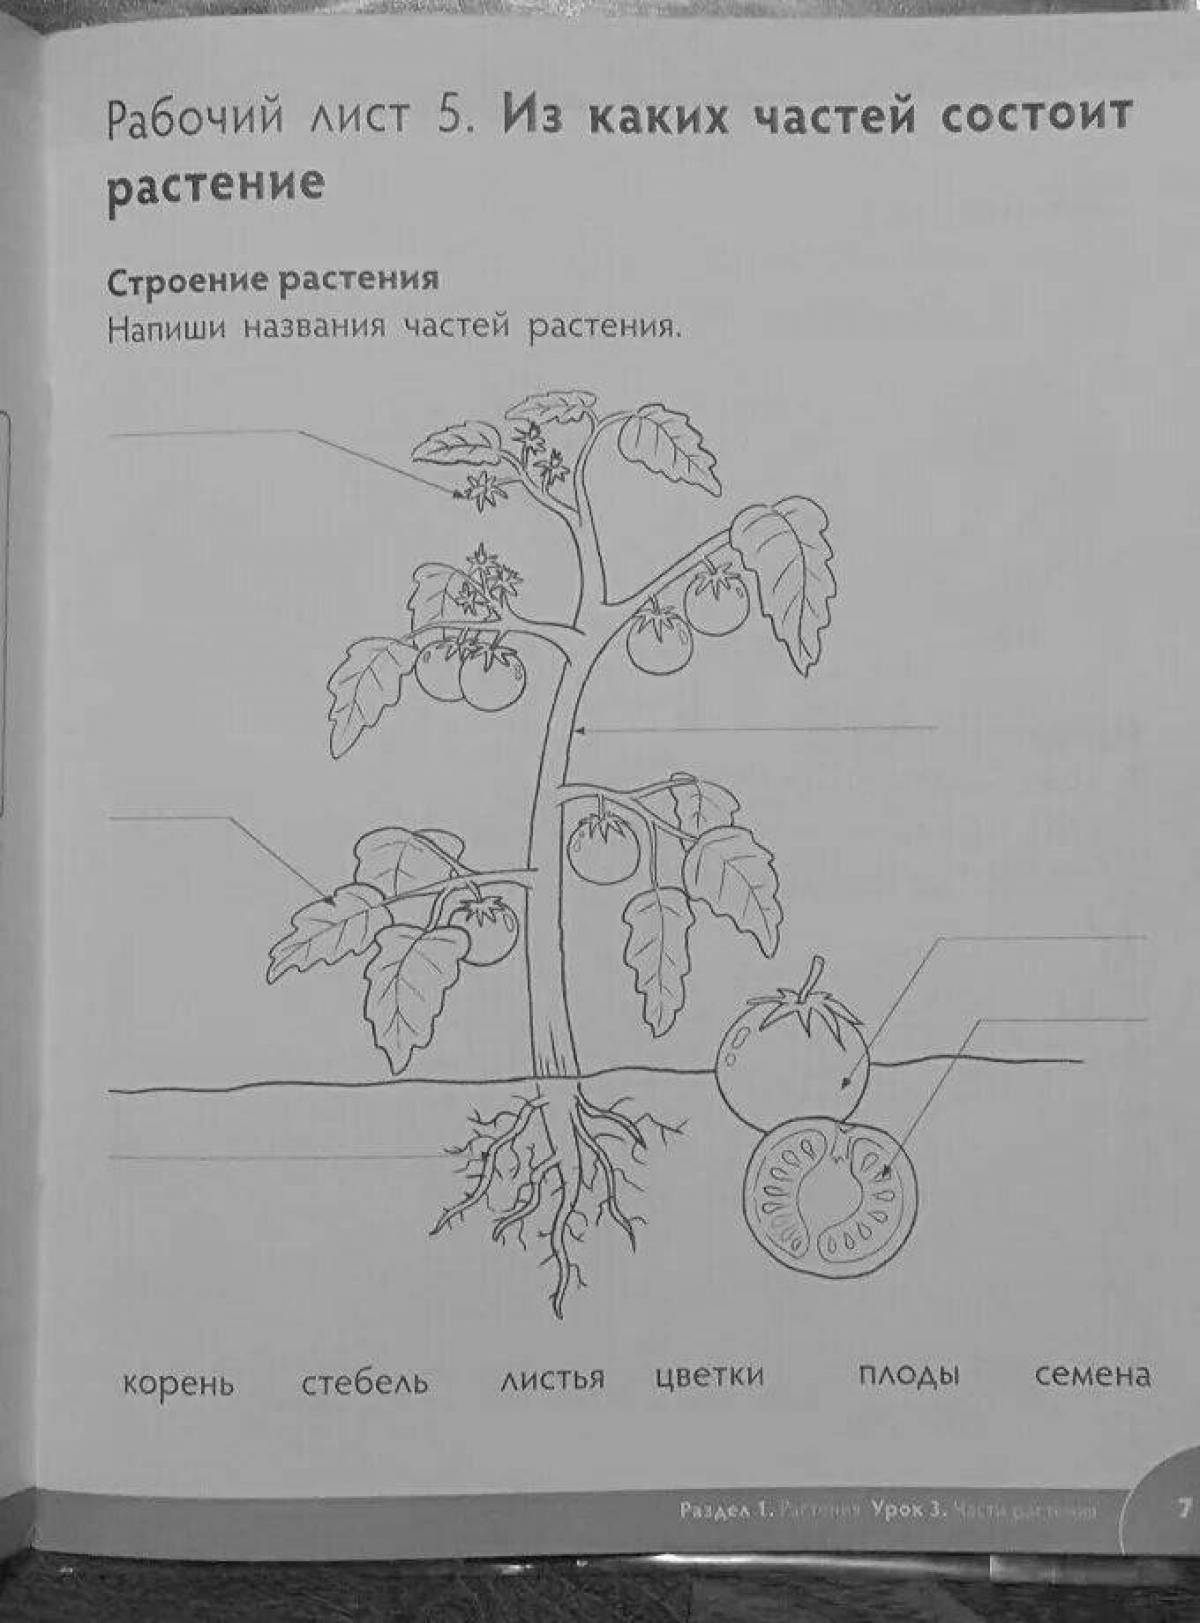 Название частей растения